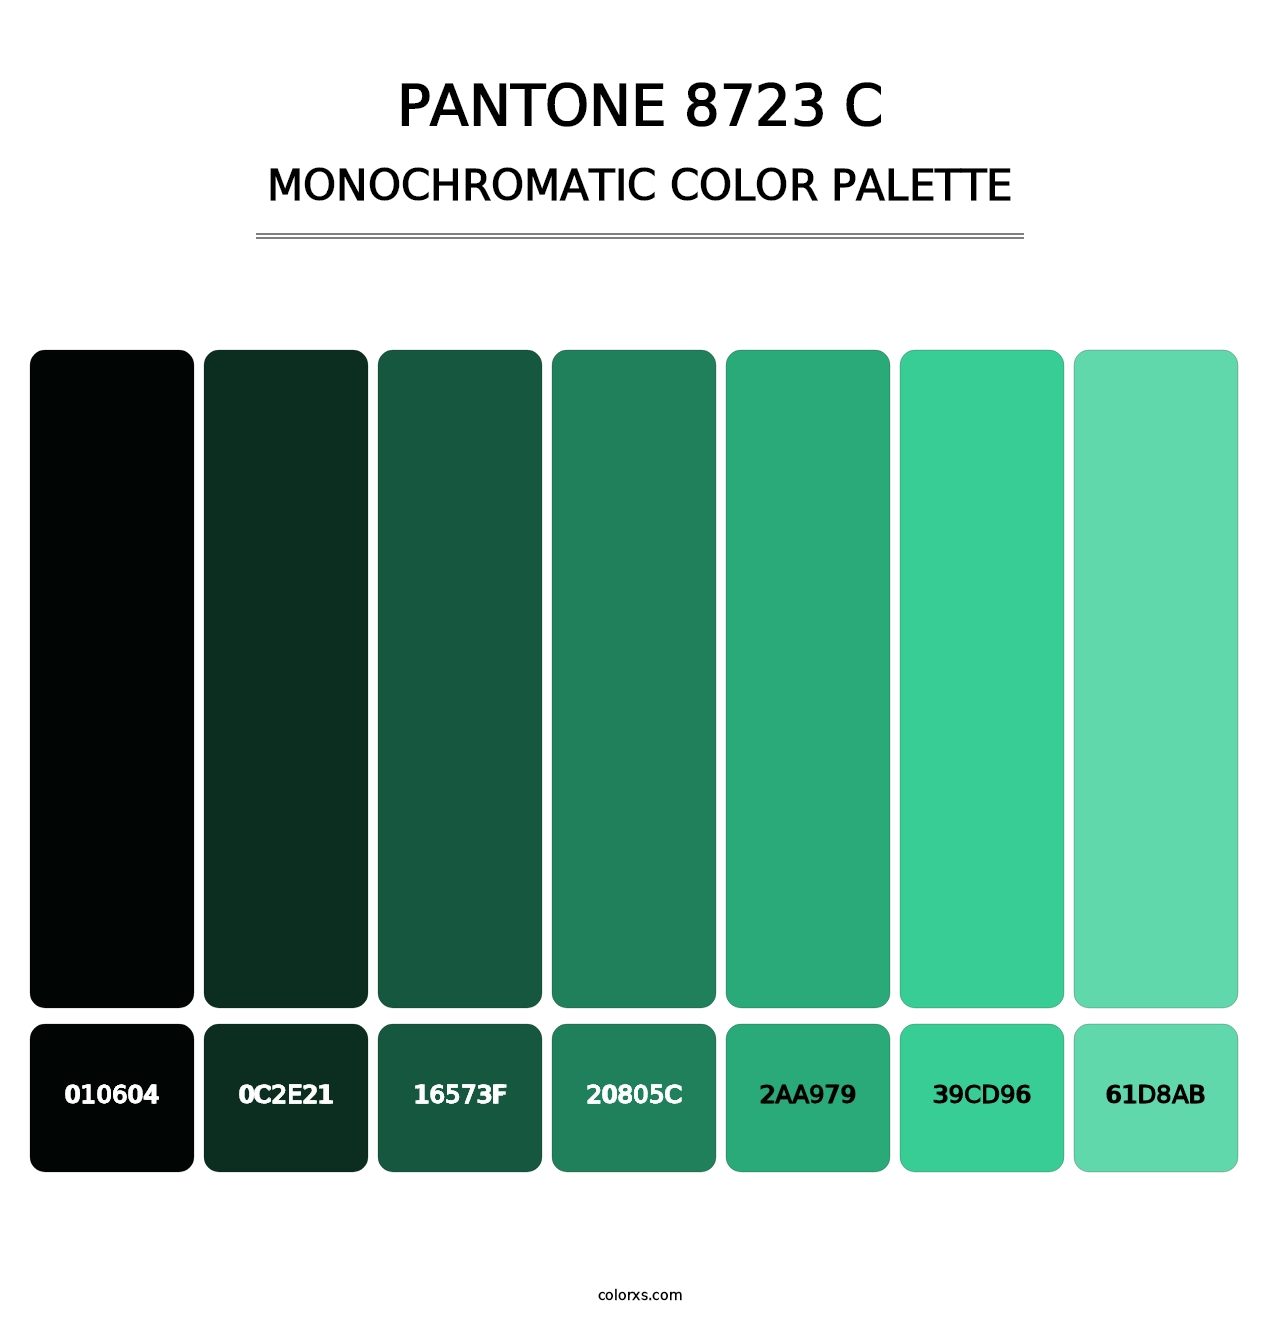 PANTONE 8723 C - Monochromatic Color Palette